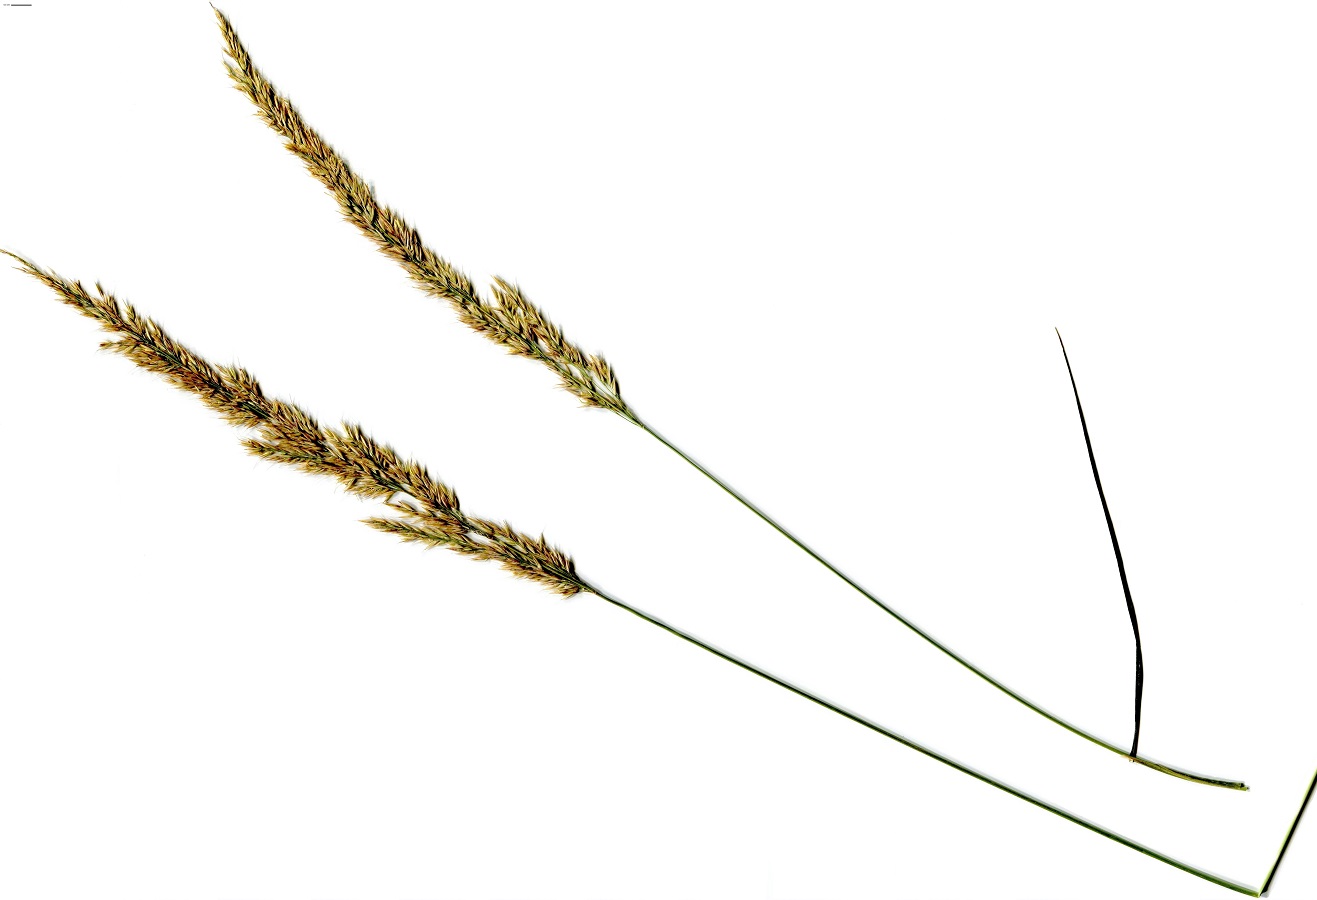 Calamagrostis arundinacea (Poaceae)